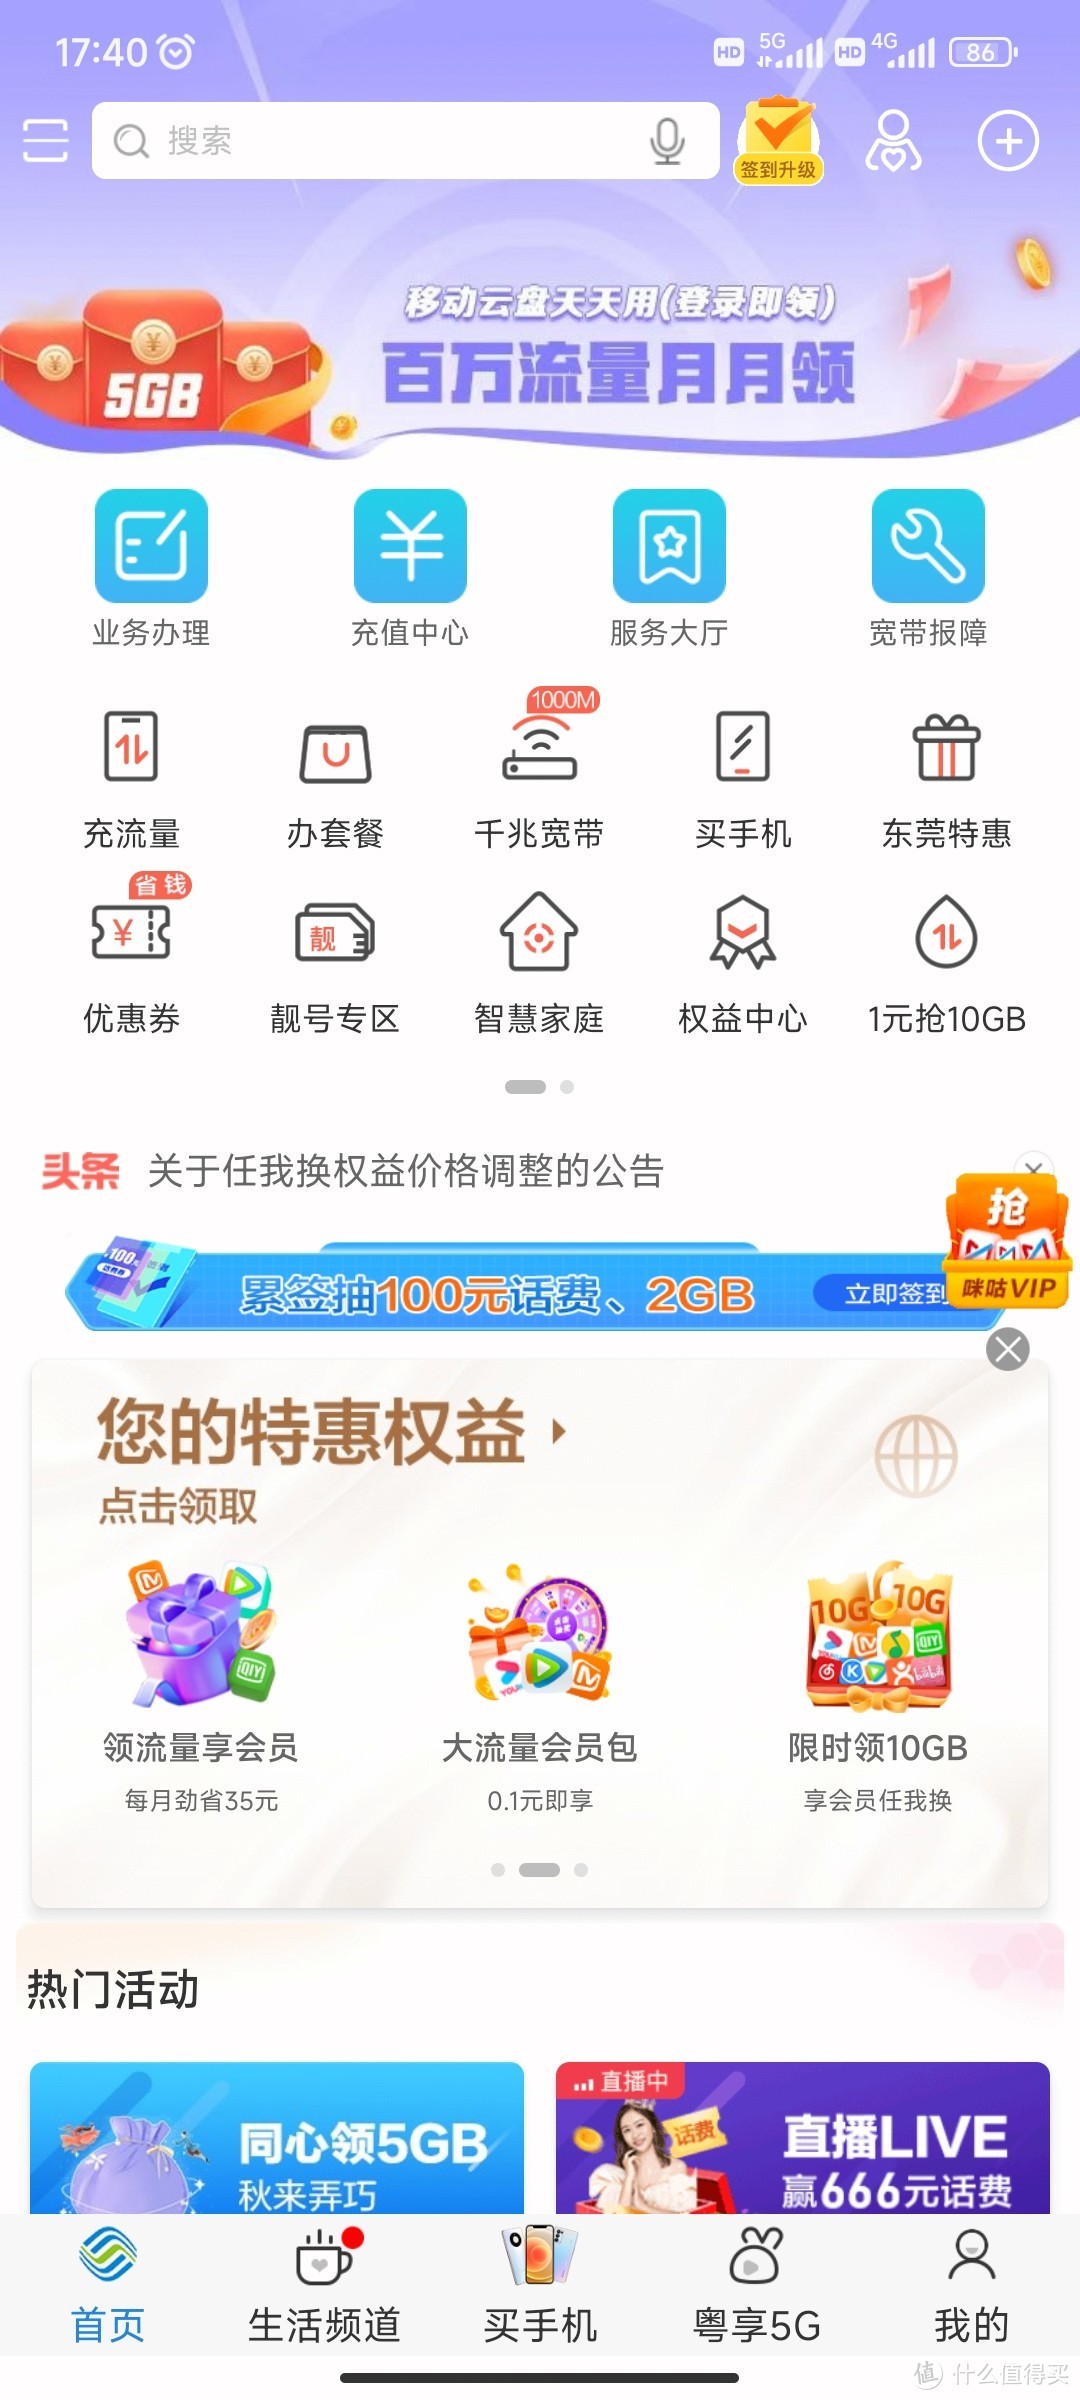 【4689元】iPhone13 256G，中国移动广东App